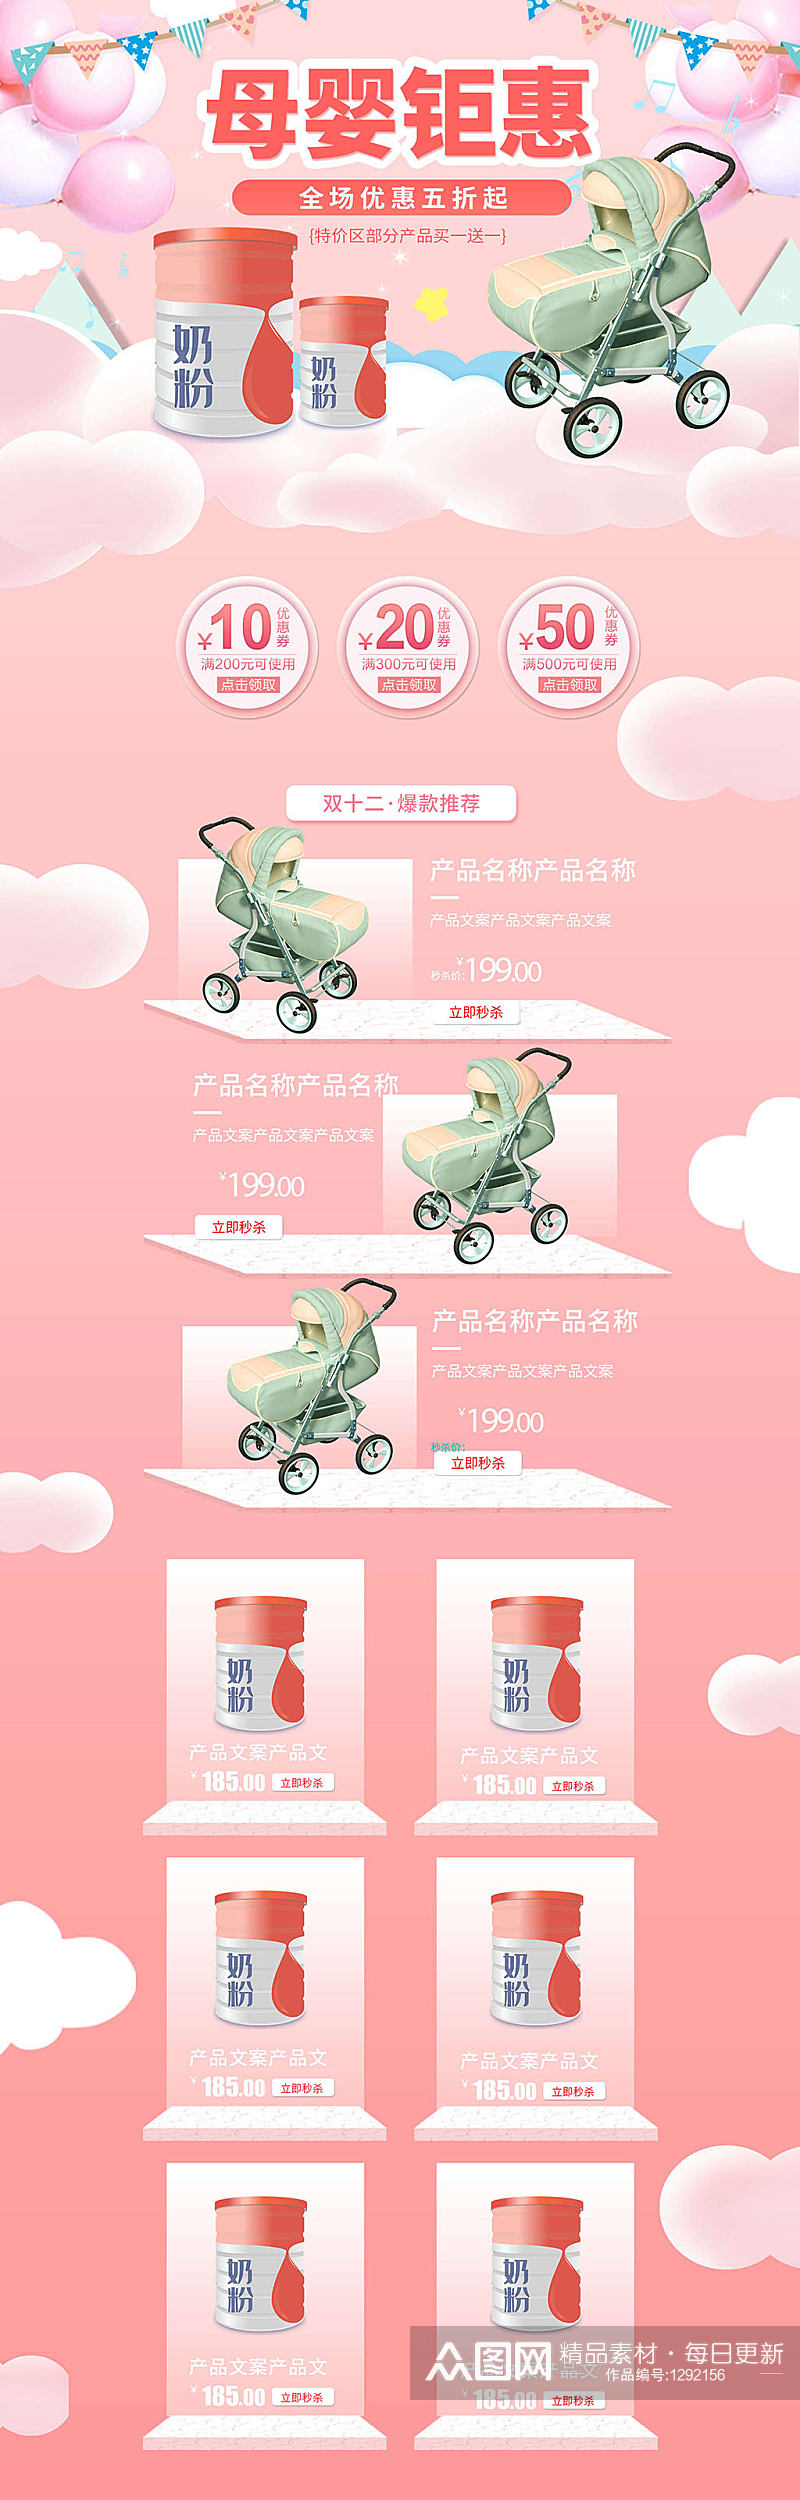 母婴钜惠电商详情页促销活动模板设计素材